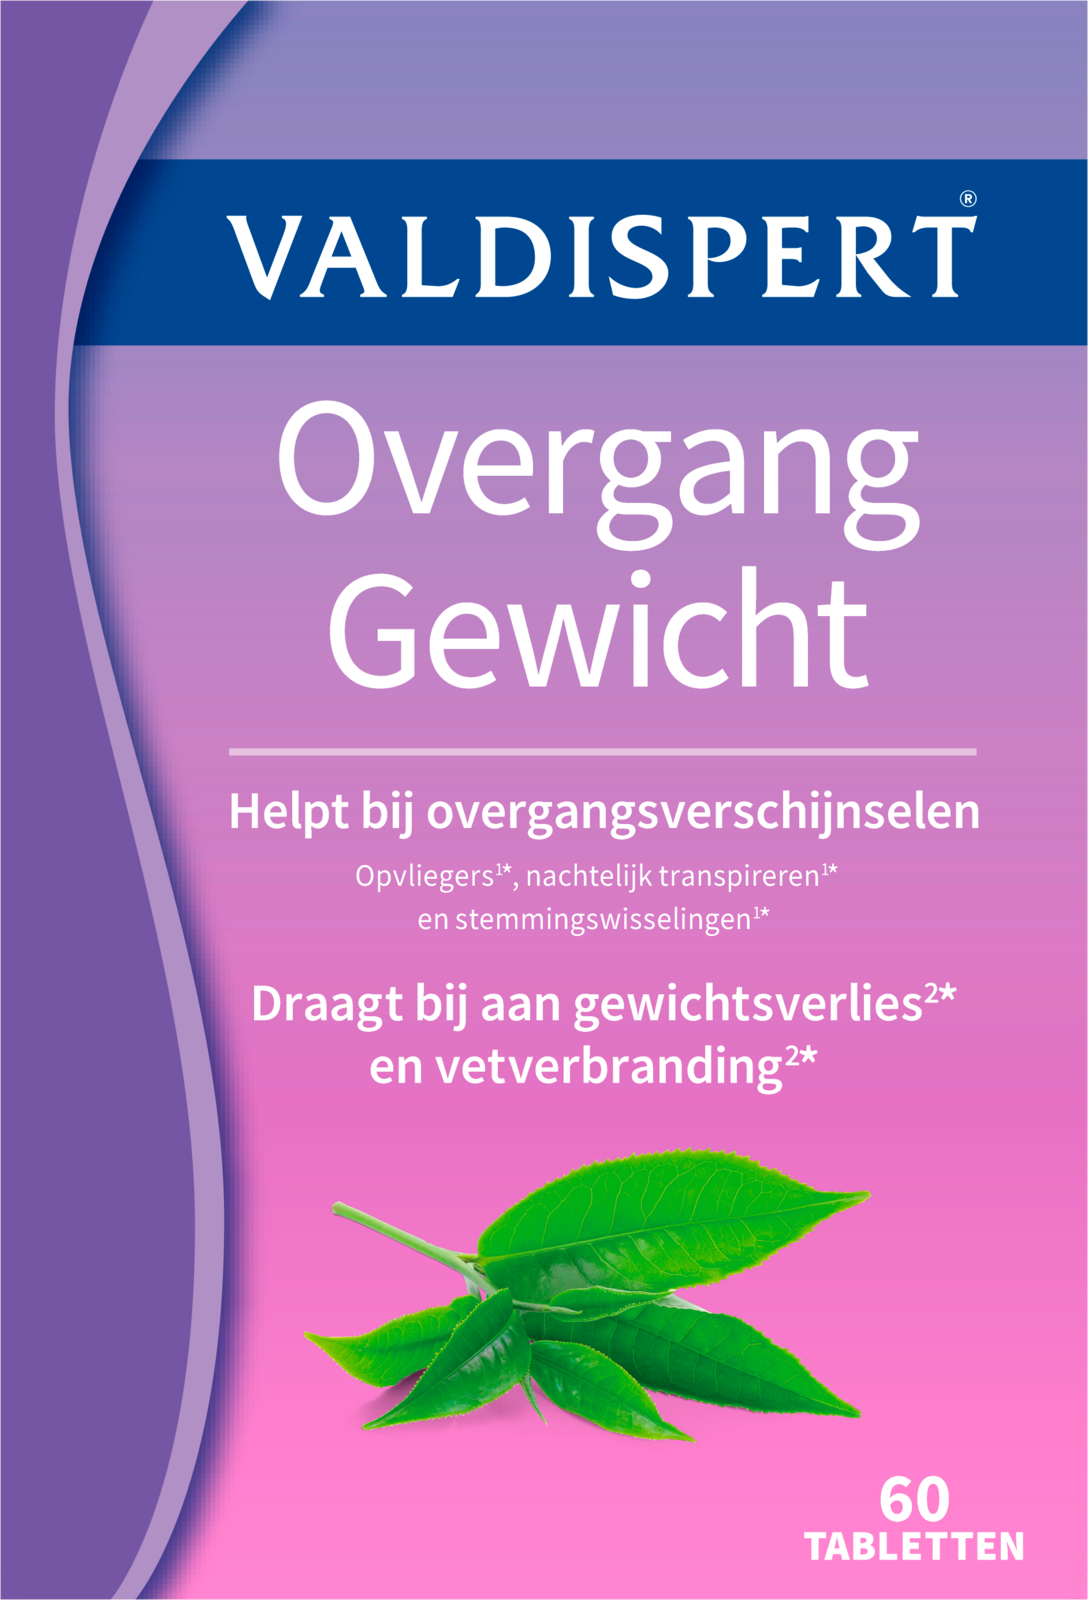 Valdispert Overgang Gewicht - Supplement - 60 tabletten